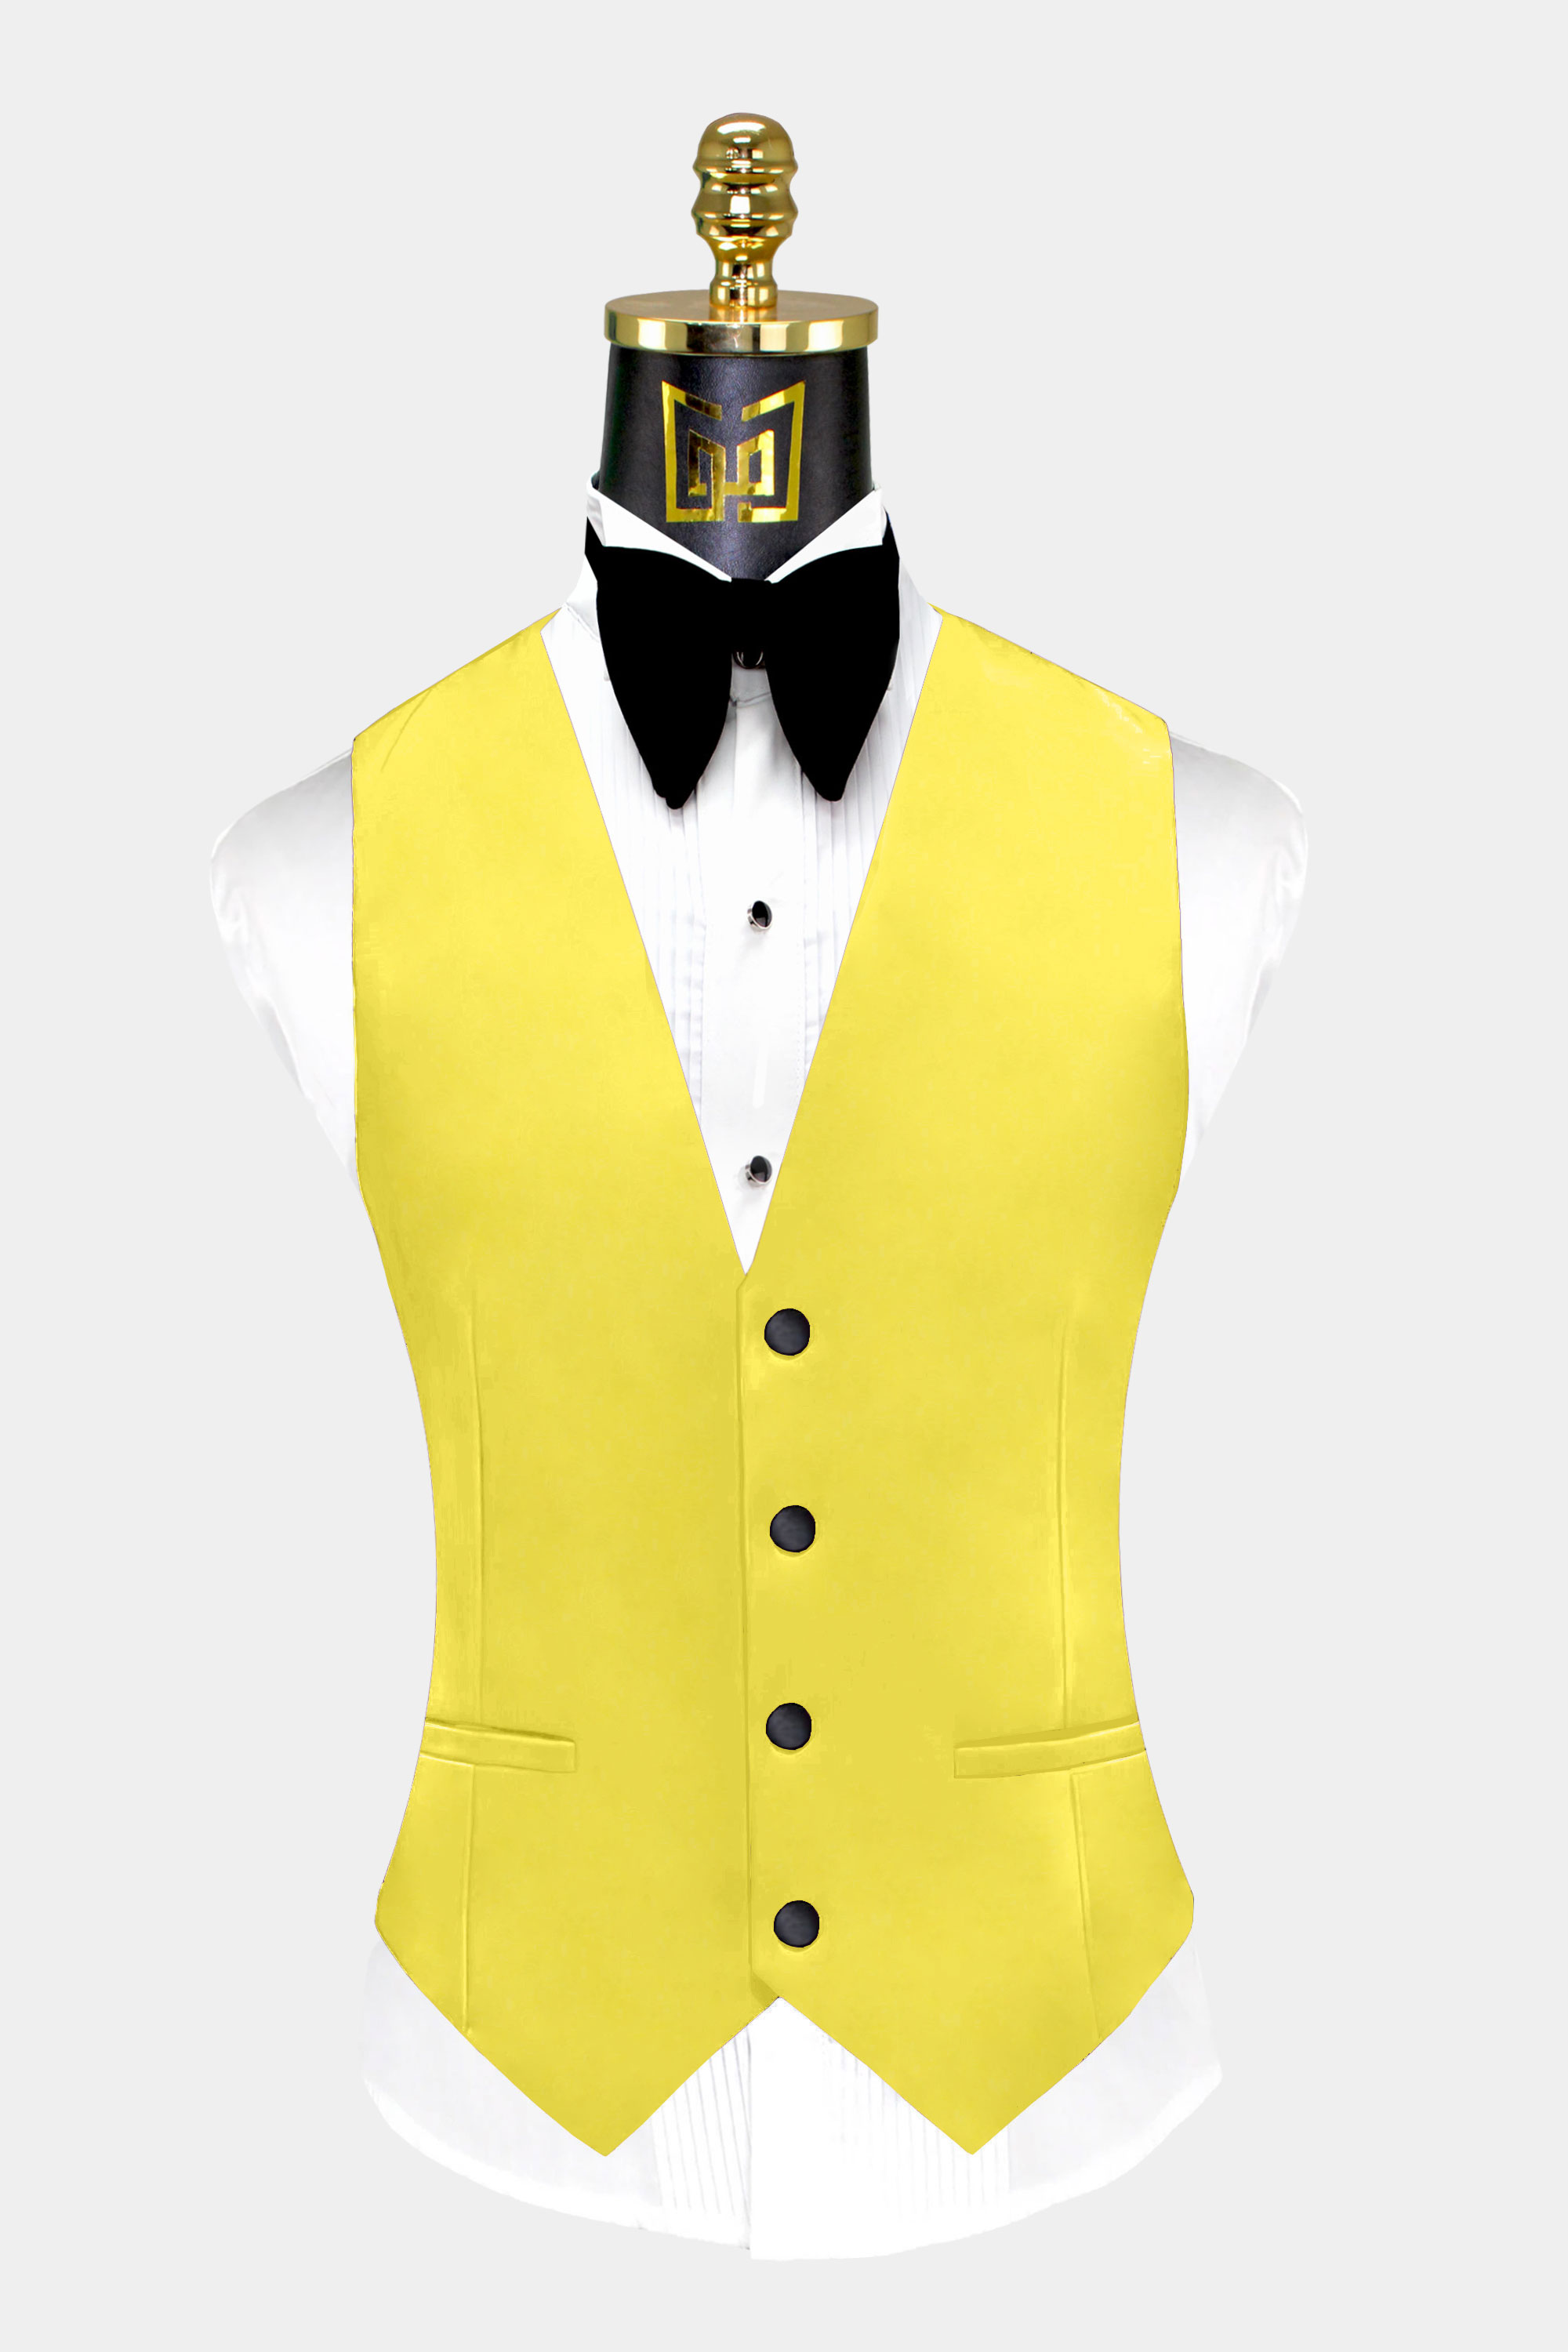 Mens-Yellow-Tuxedo-Vest-Groom-Wedding-Suit-Waistcoat-from-Gentlemansguru.com